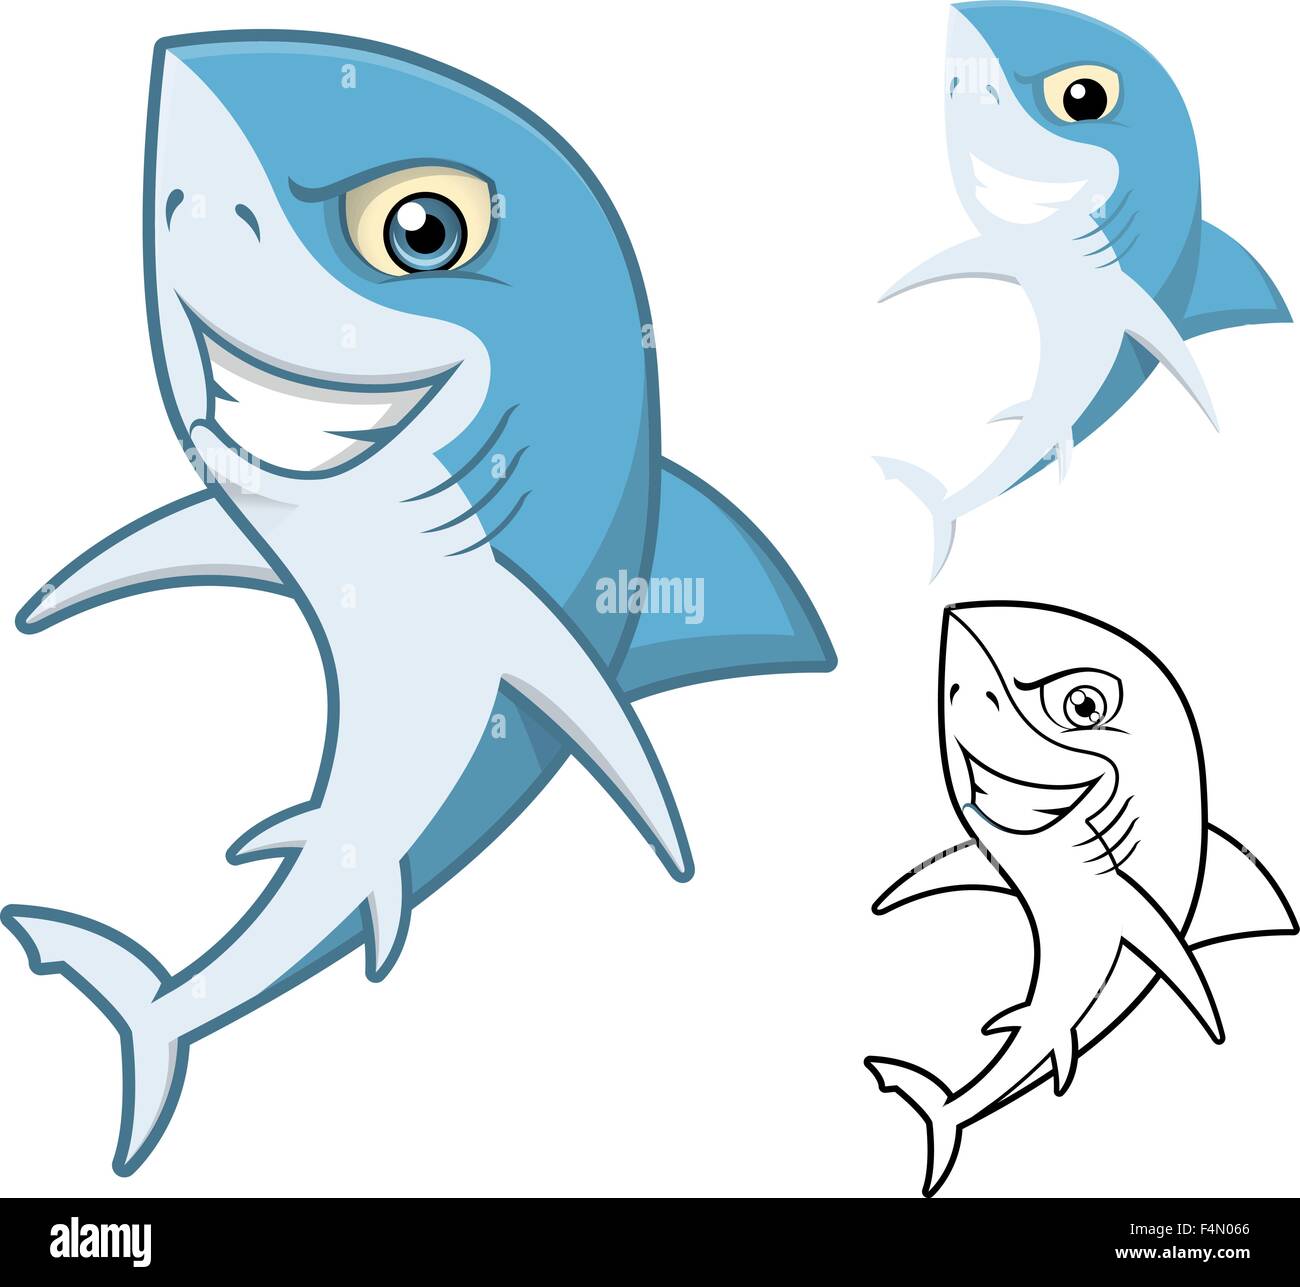 Alta qualità Shark personaggio dei fumetti includono design piatto e Line Art versione Illustrazione Vettoriale